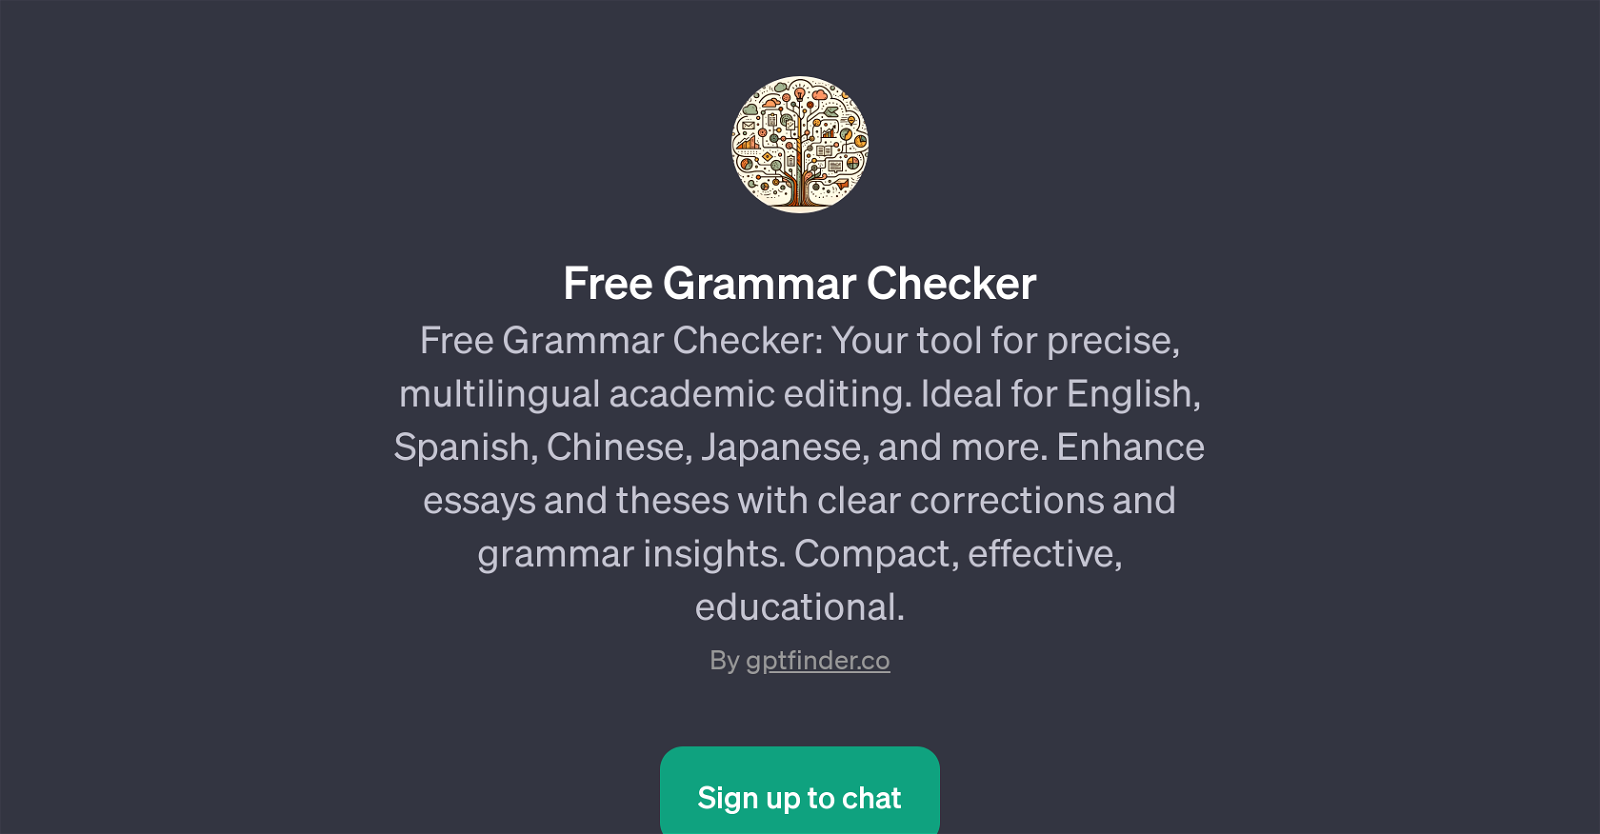 Free Grammar Checker website